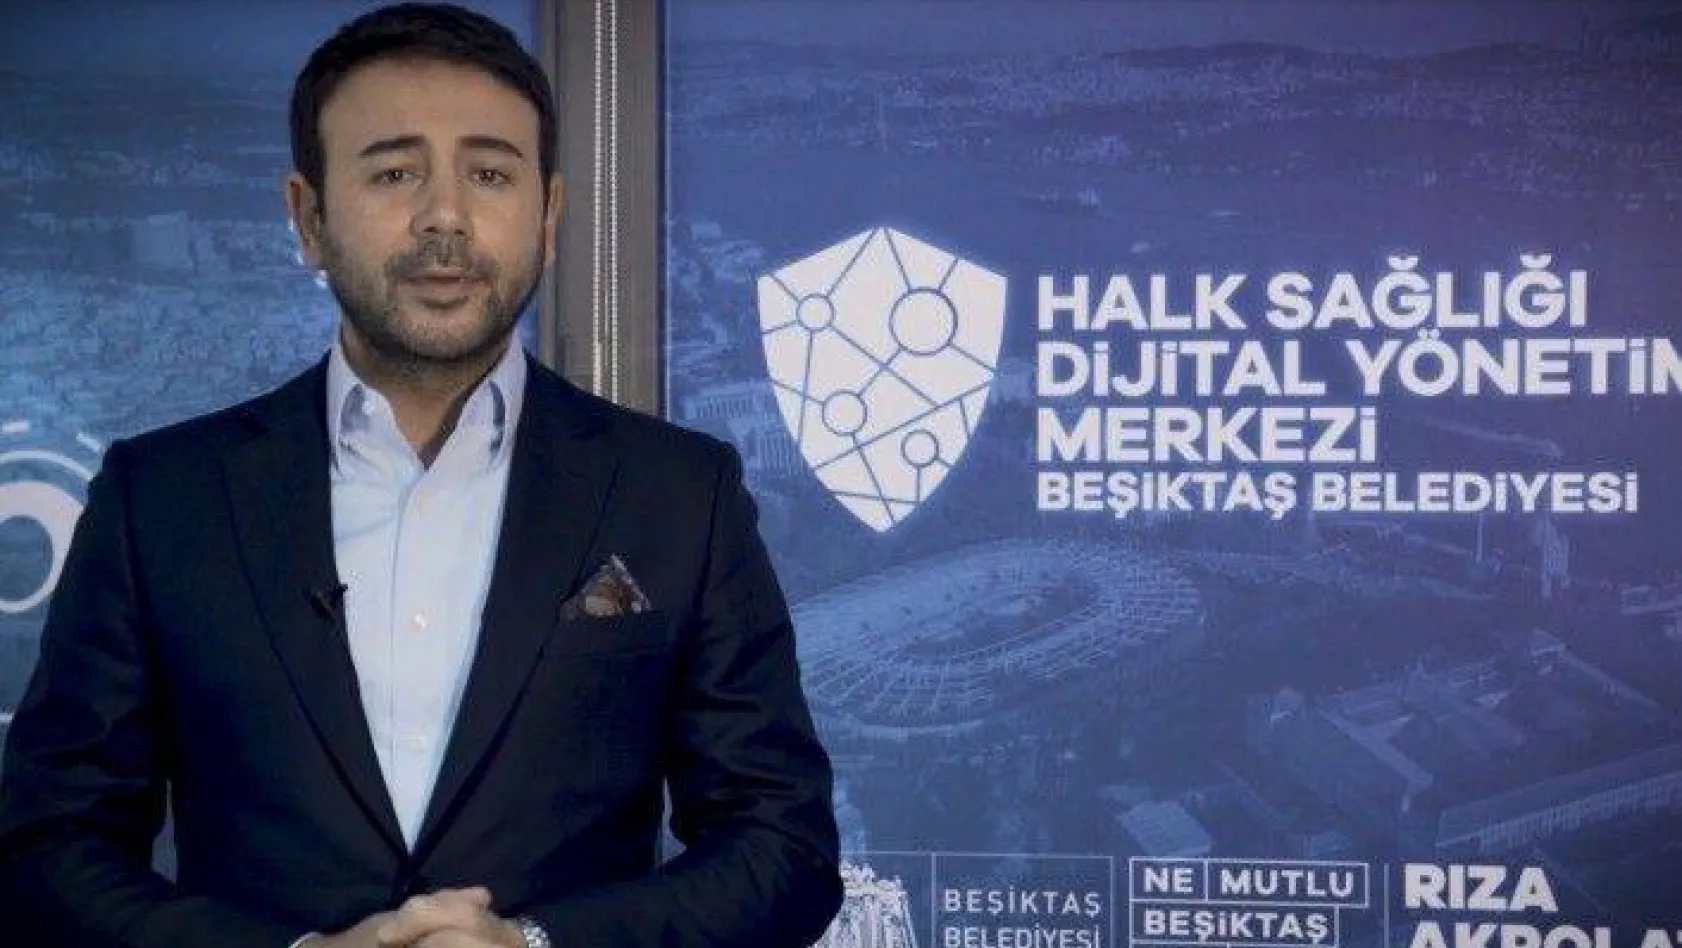 Beşiktaş'ta iş yeri kiraları, yurtlar ve kreşlerden bir süre ücret alınmayacak